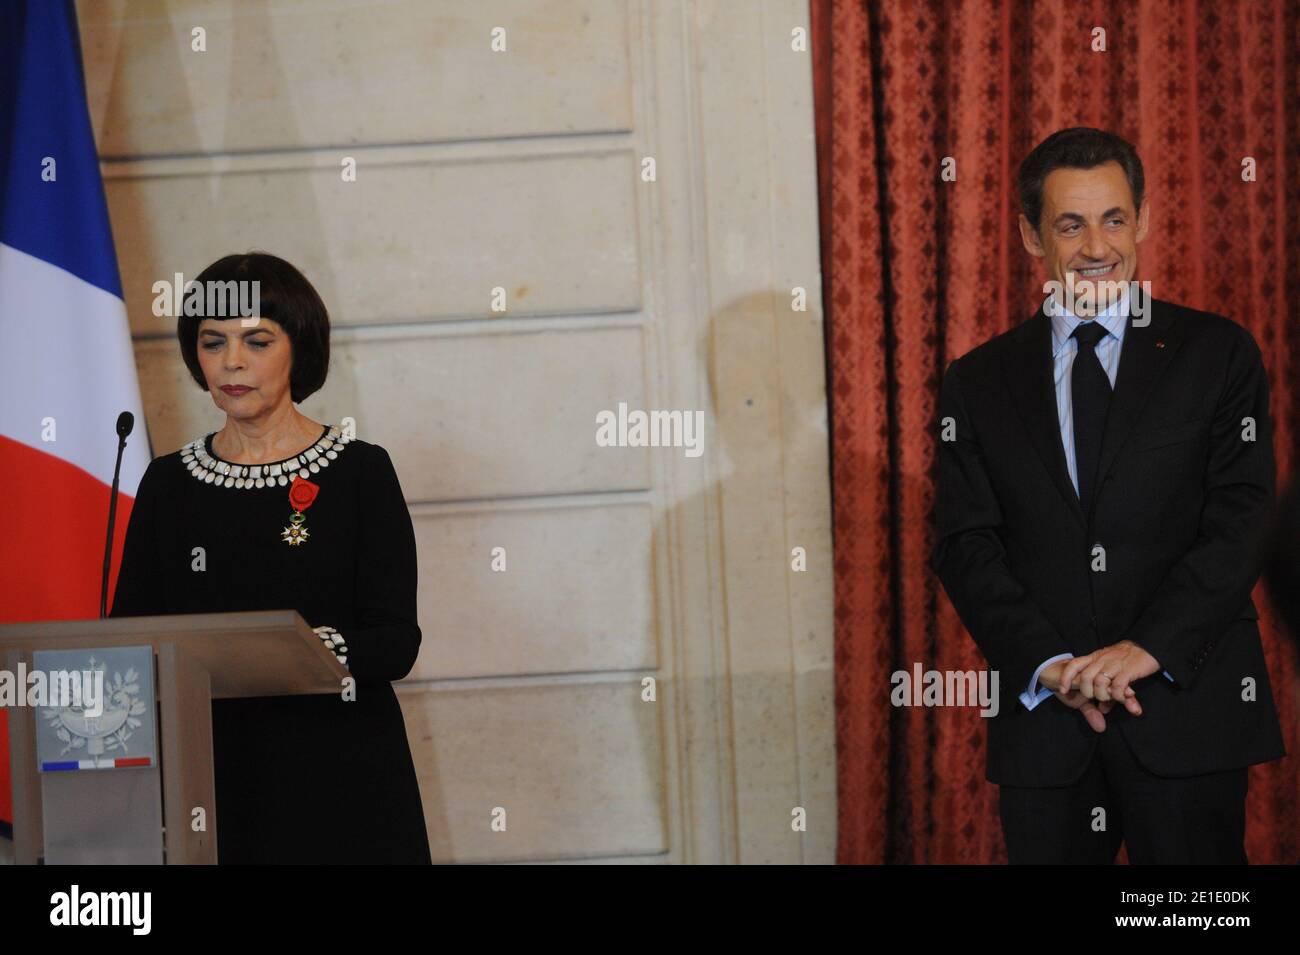 La chanteuse française Mireille Mathieu prononce un discours lorsqu'elle reçoit la Légion d'Honneur du président français Nicolas Sarkozy à l'Elysée Palace de Paris, France, le 26 janvier 2011. Photo de Mousse/ABACAPRESS.COM Banque D'Images